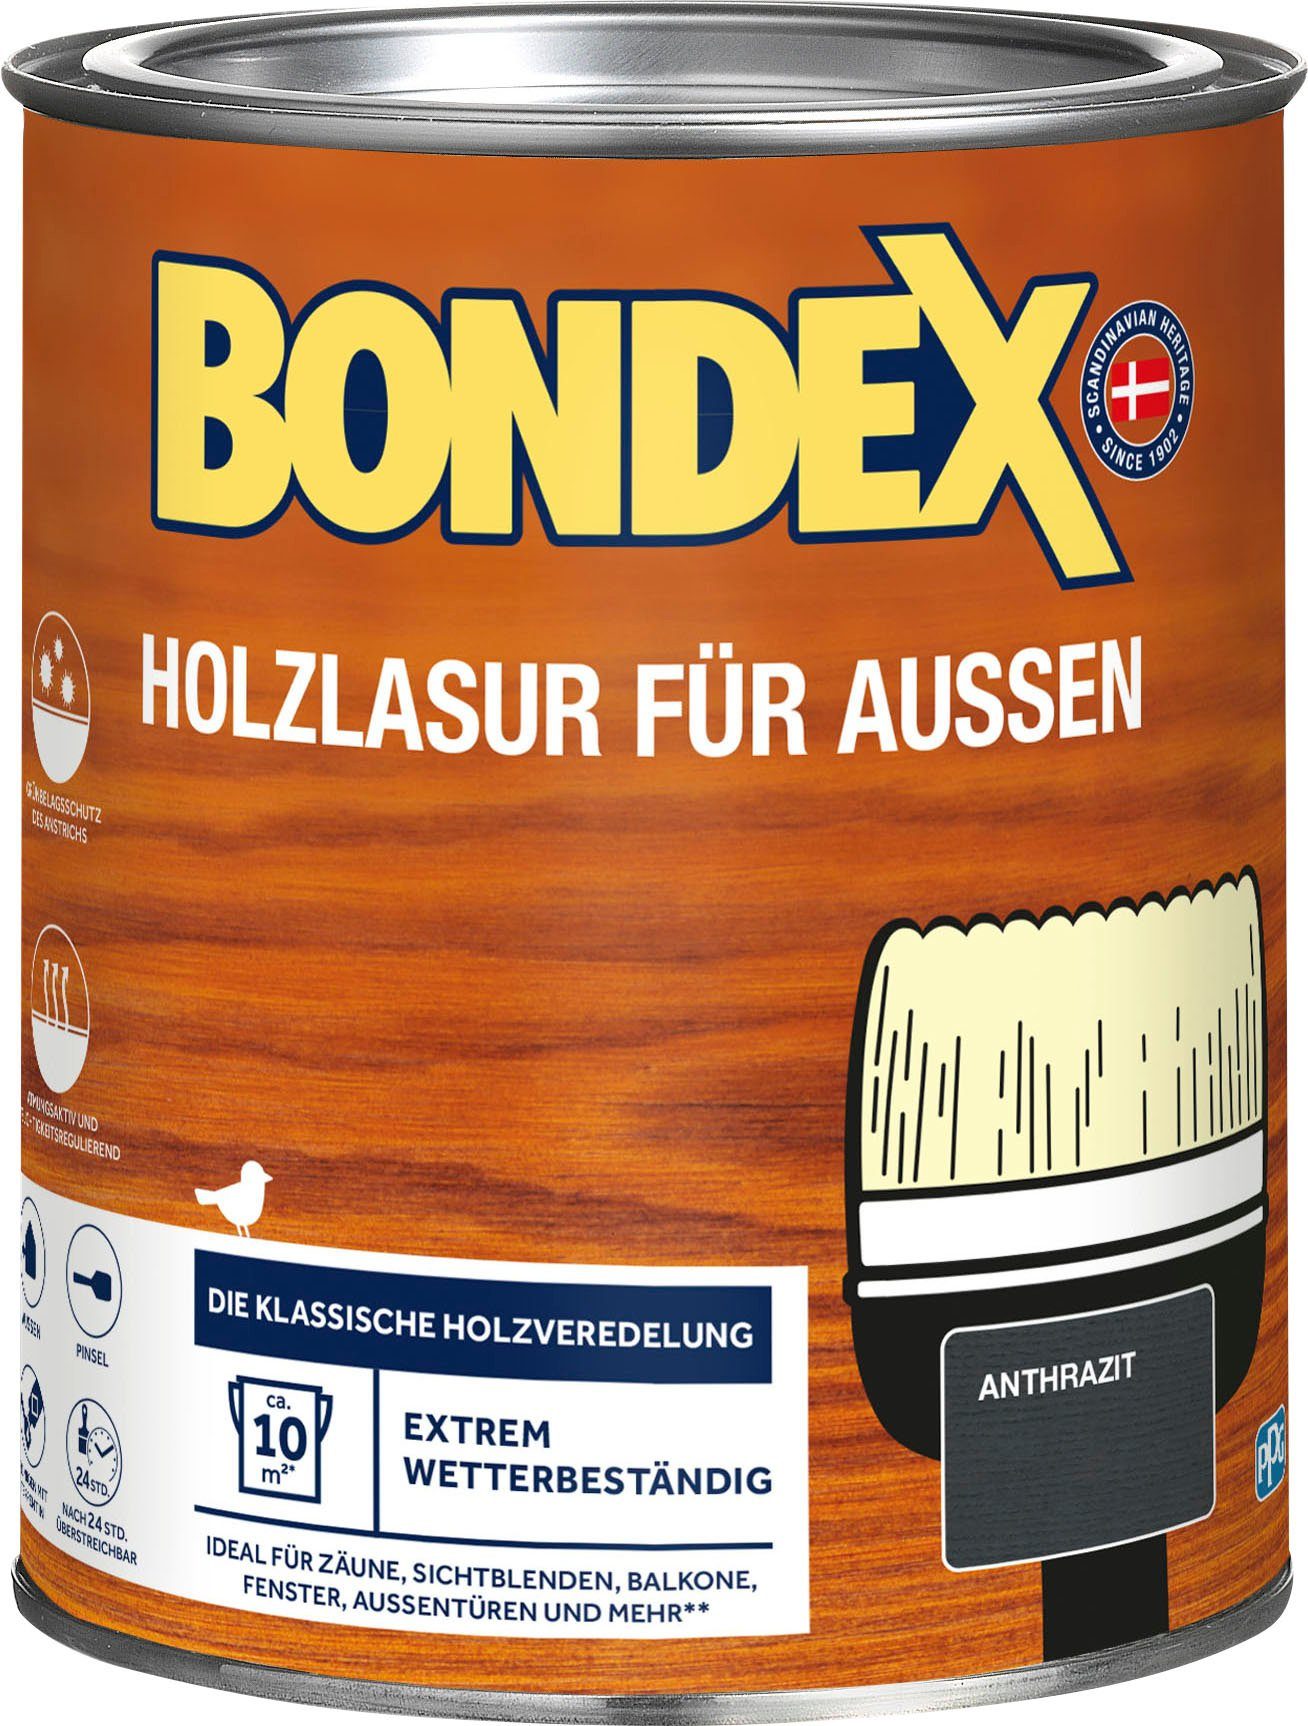 Bondex Holzschutzlasur HOLZLASUR FÜR AUSSEN, Wetterschutz Holzverkleidung, atmungsaktiv, in versch. Farbtönen Anthrazit, grau